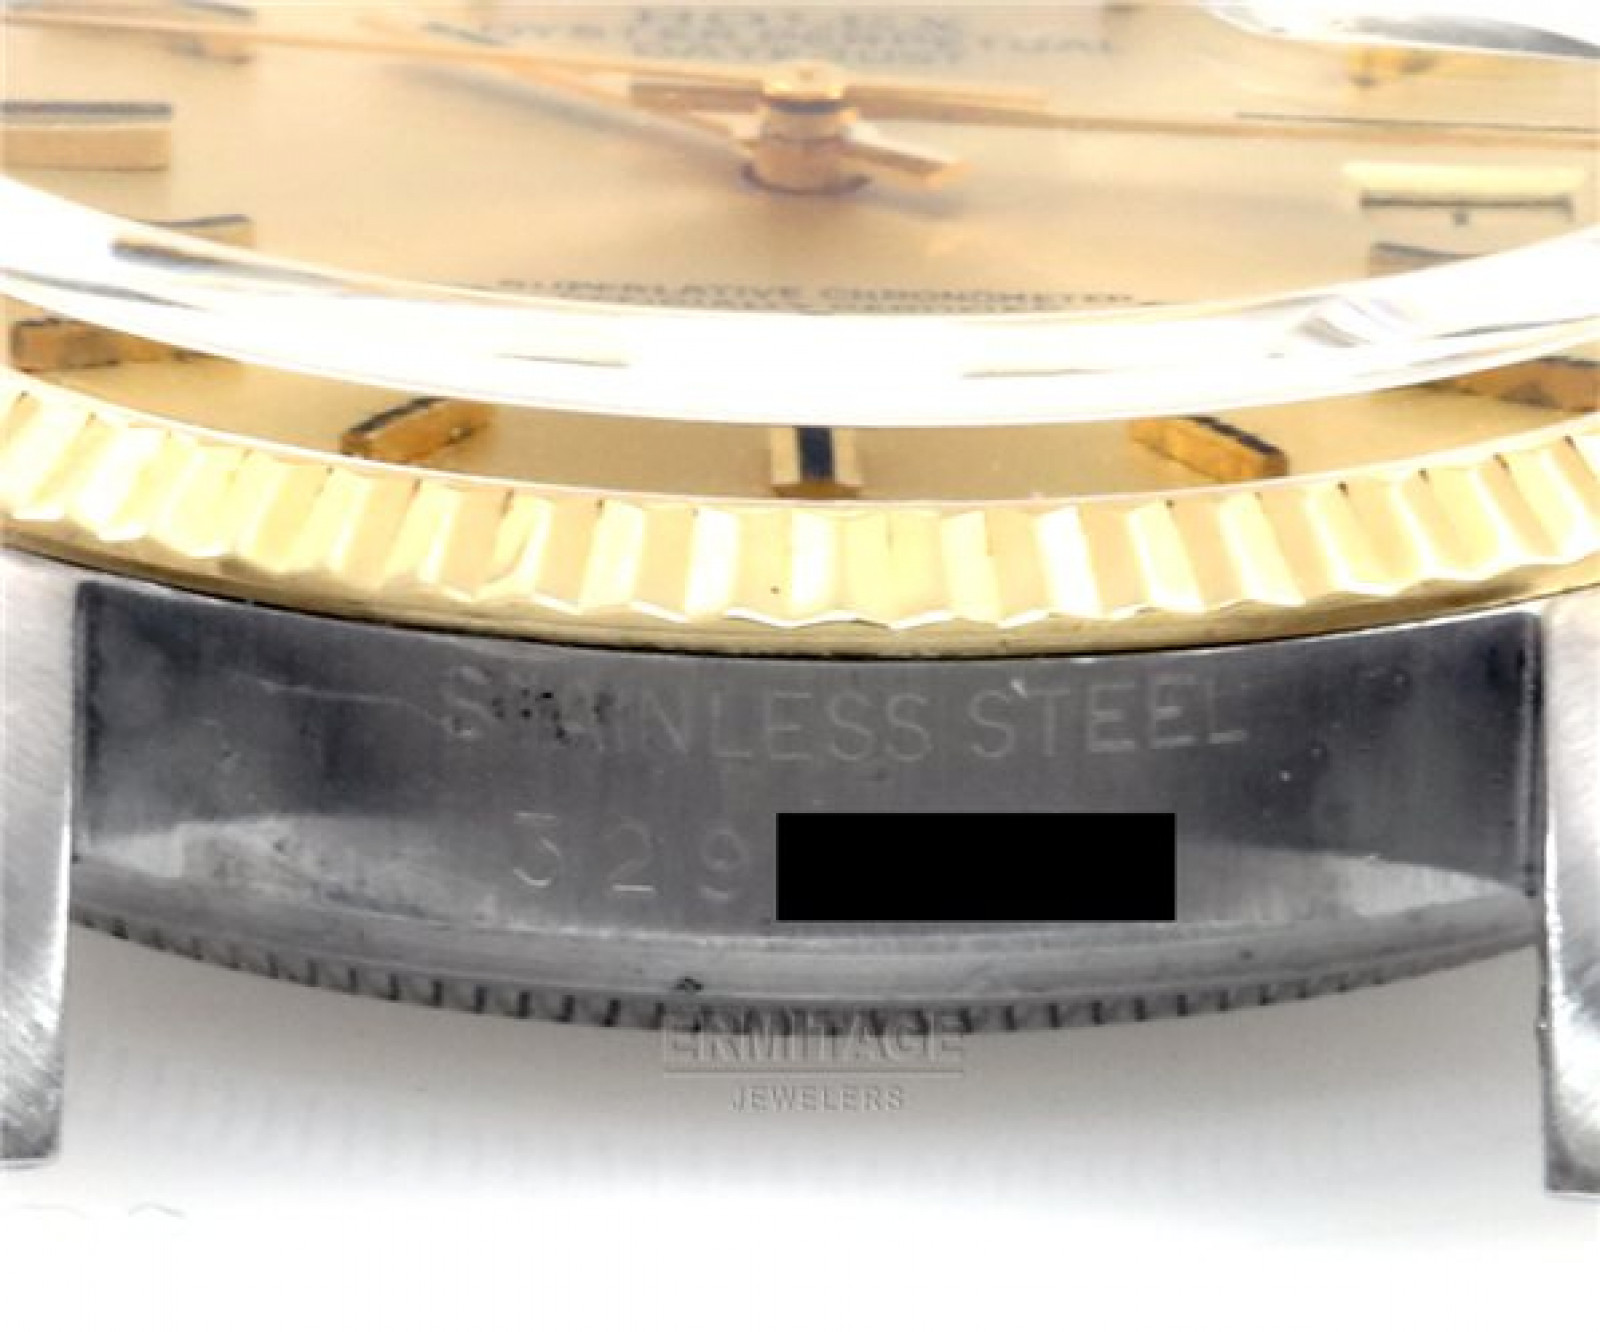 Vintage Rare Rolex Datejust 1601 Gold Year 1971